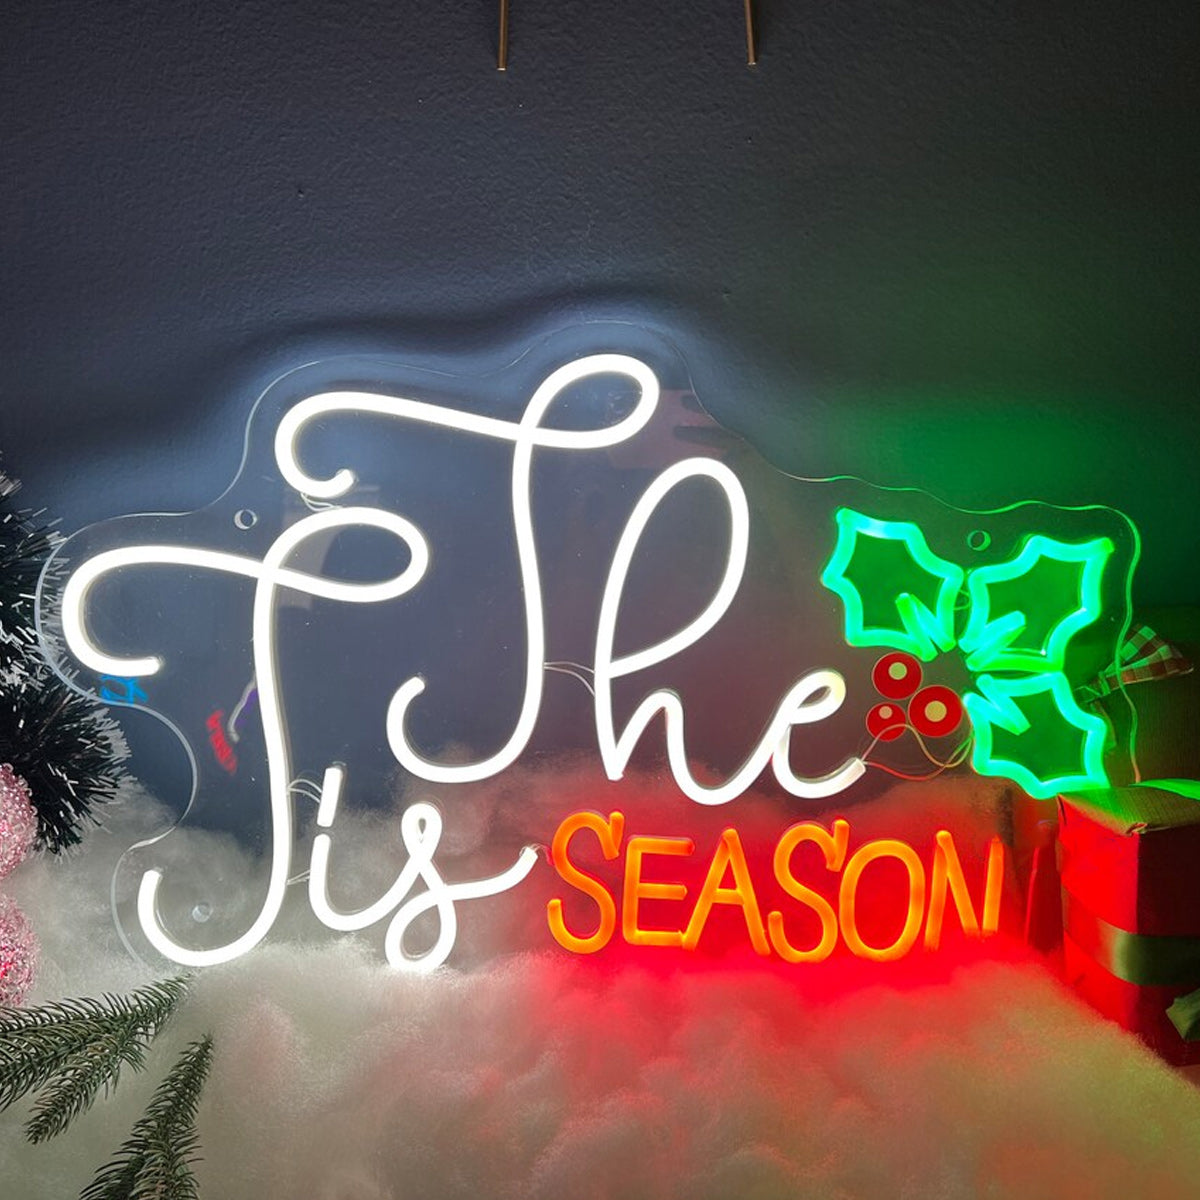 NEONIP-100% fatto a mano È la stagione dell'insegna al neon di Natale